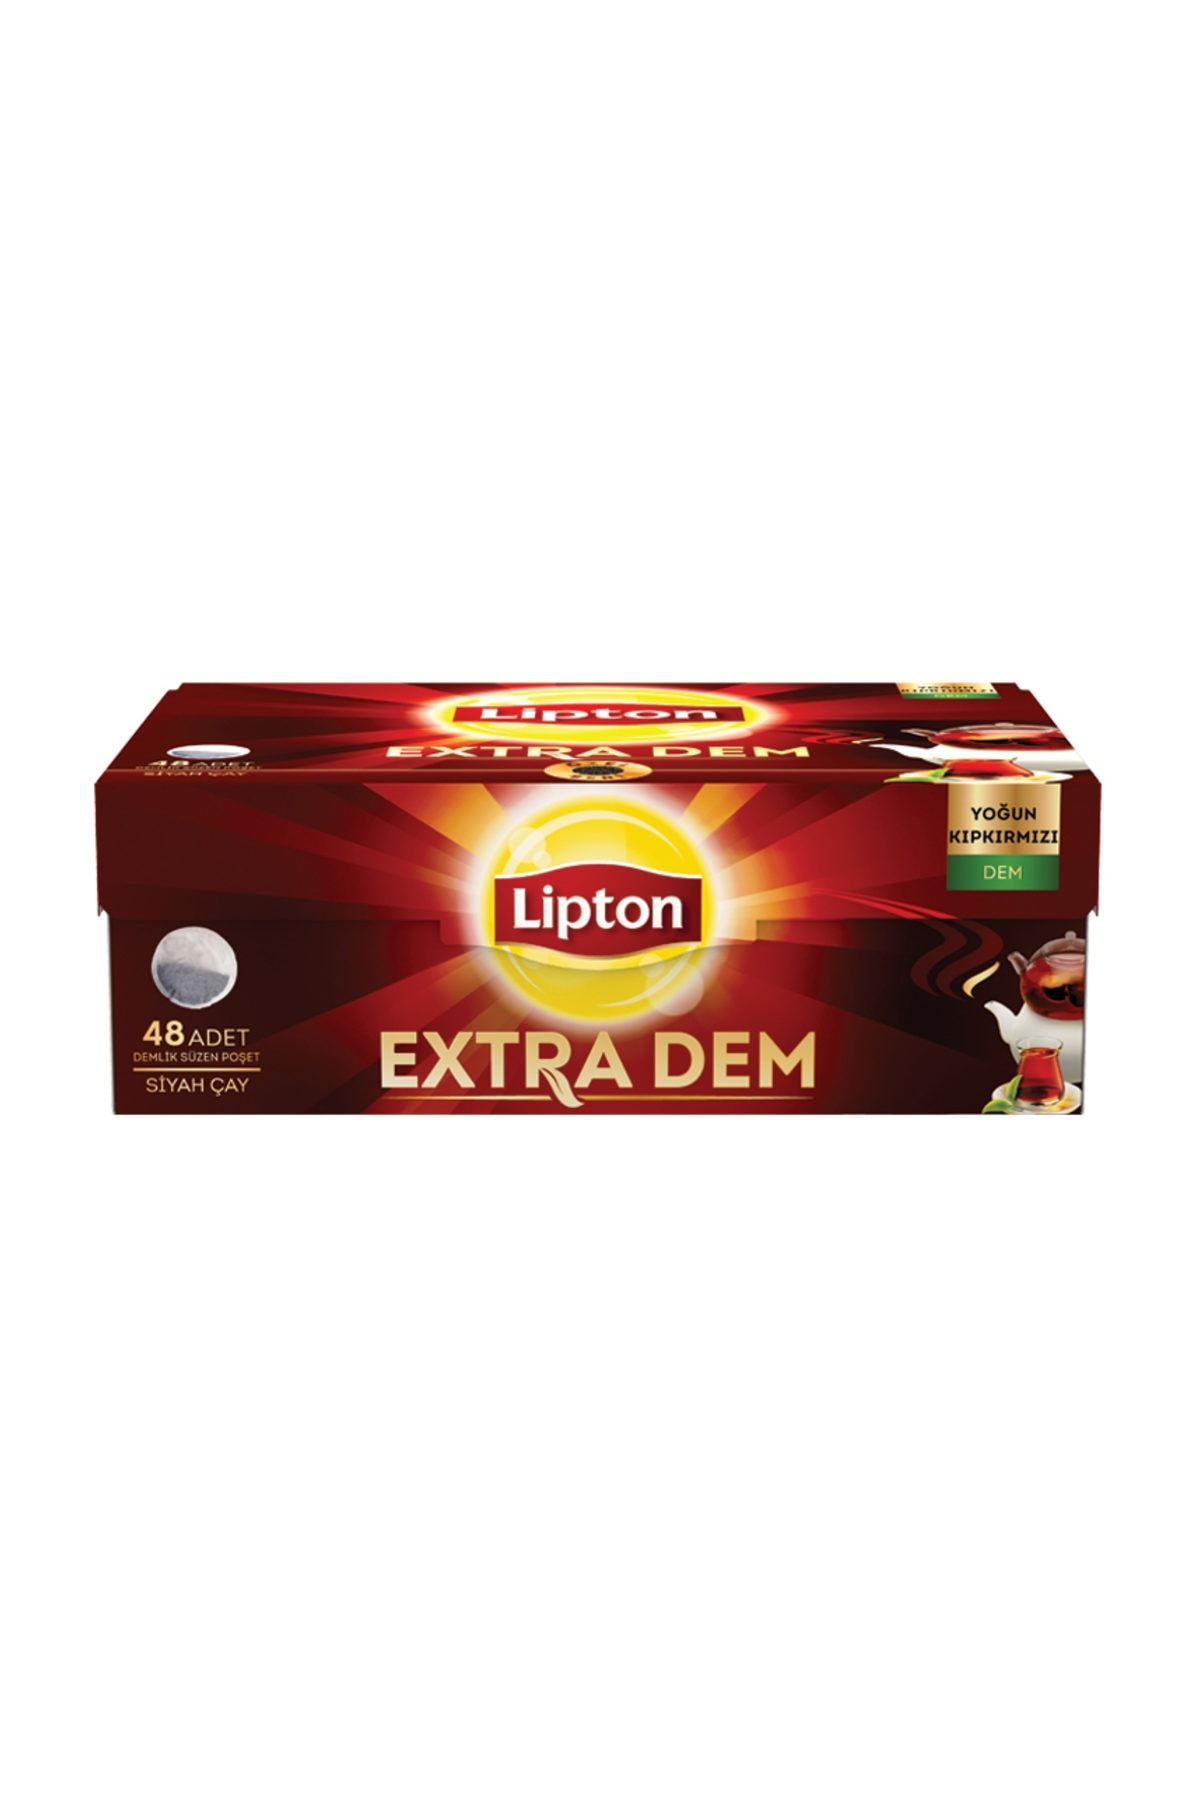 Lipton Extra Dem Demlik Poşet Çay 48'Li 153 gr